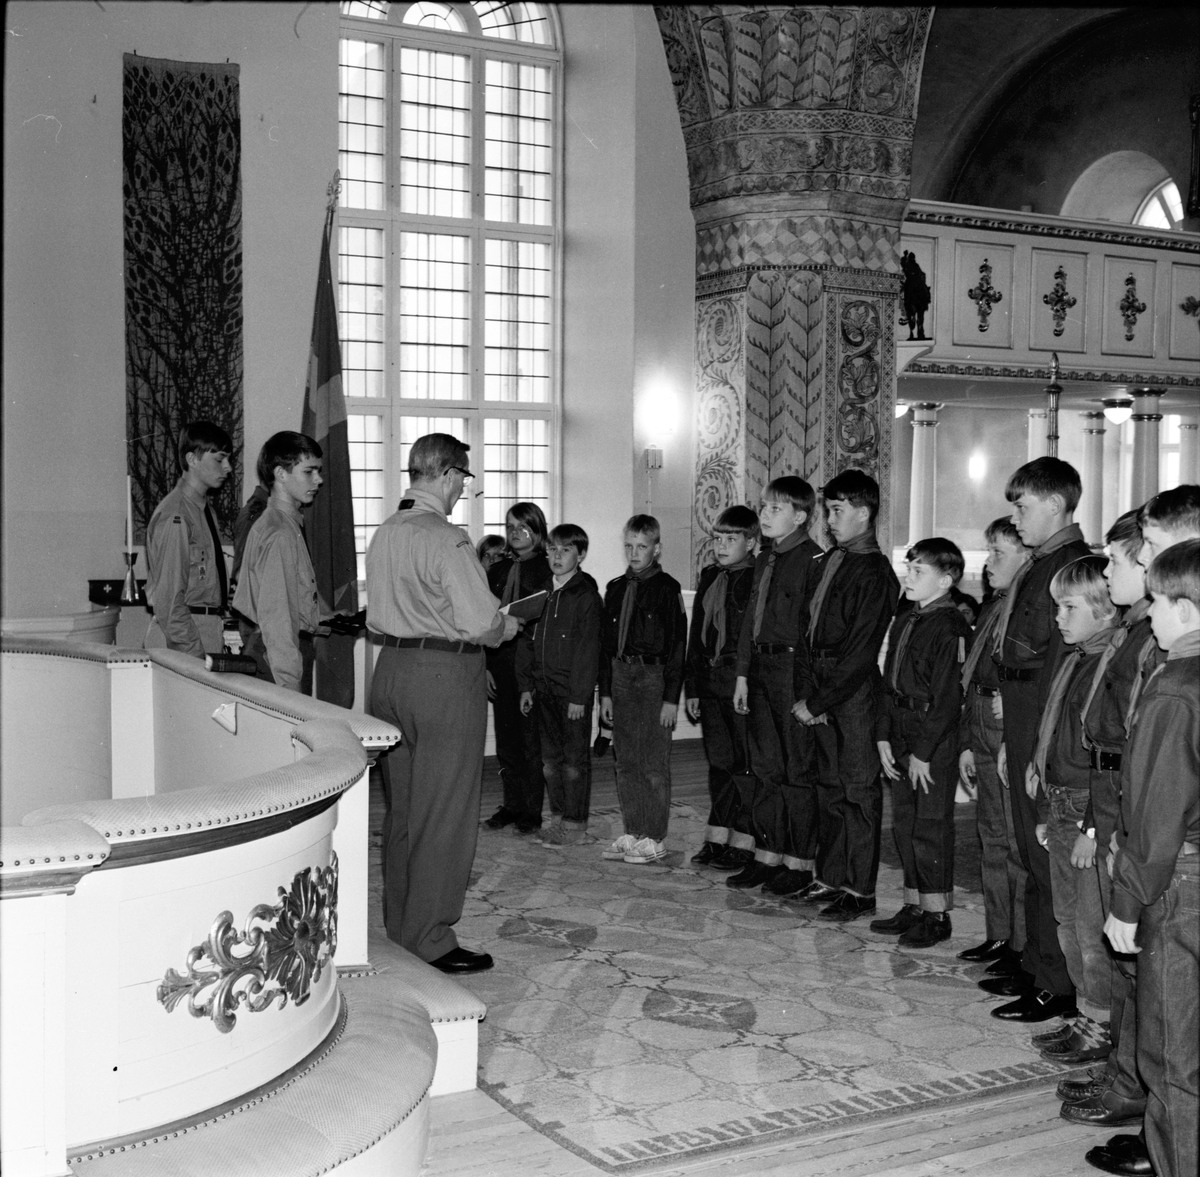 Arbrå,
Scoutupptagning i kyrkan,
21 April 1968